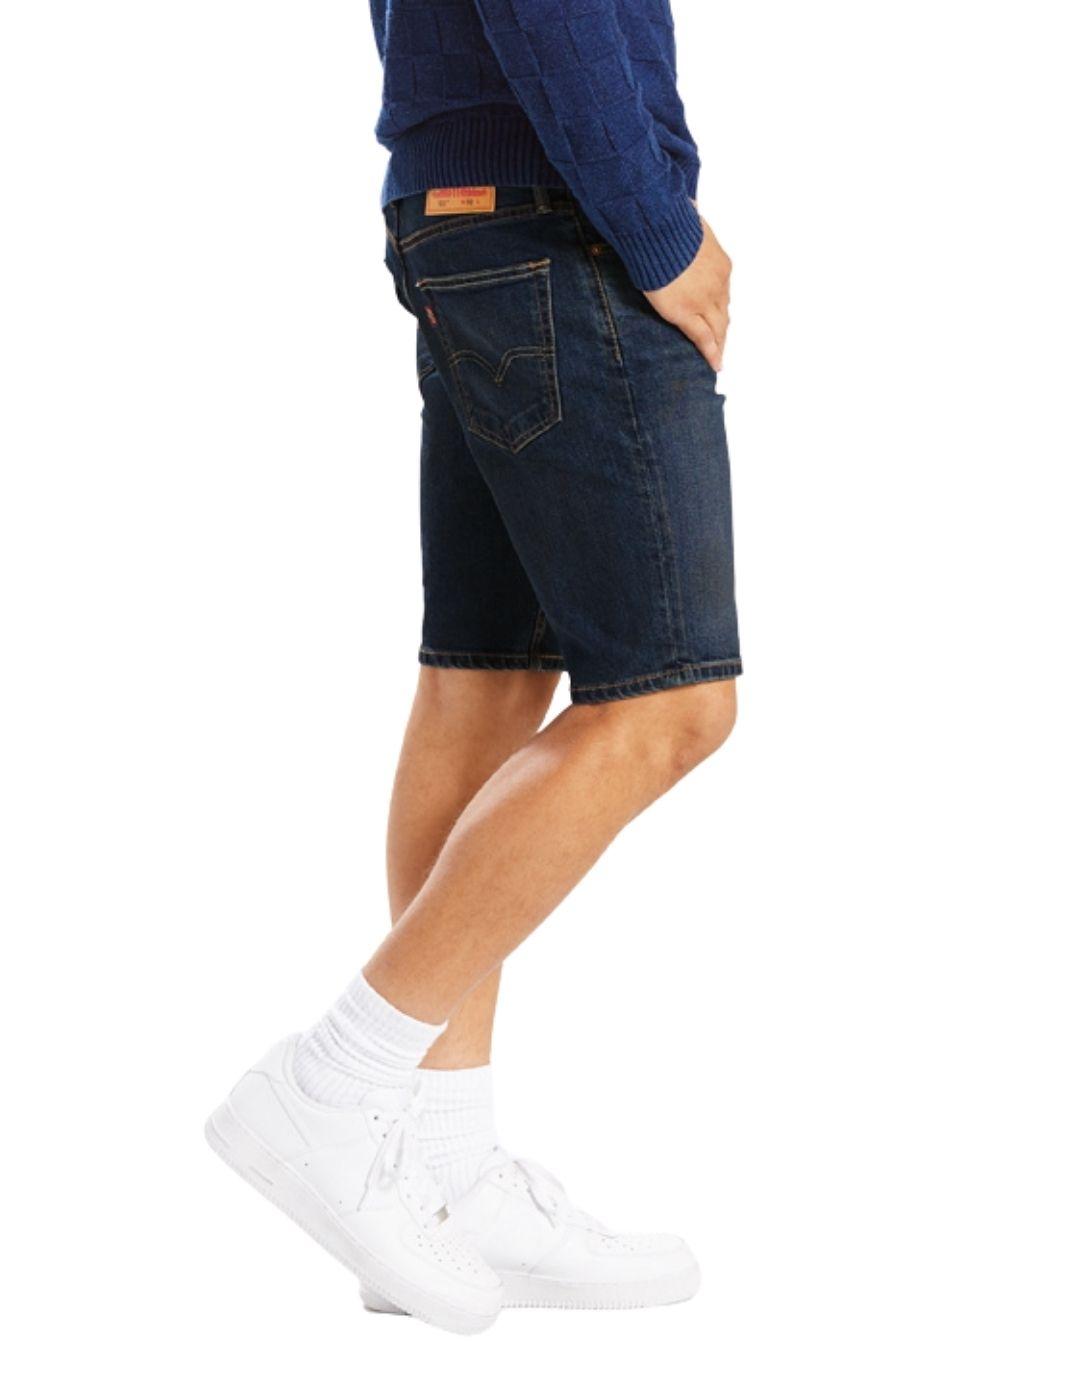 Pantalones cortos Levi's® 511 de hombre